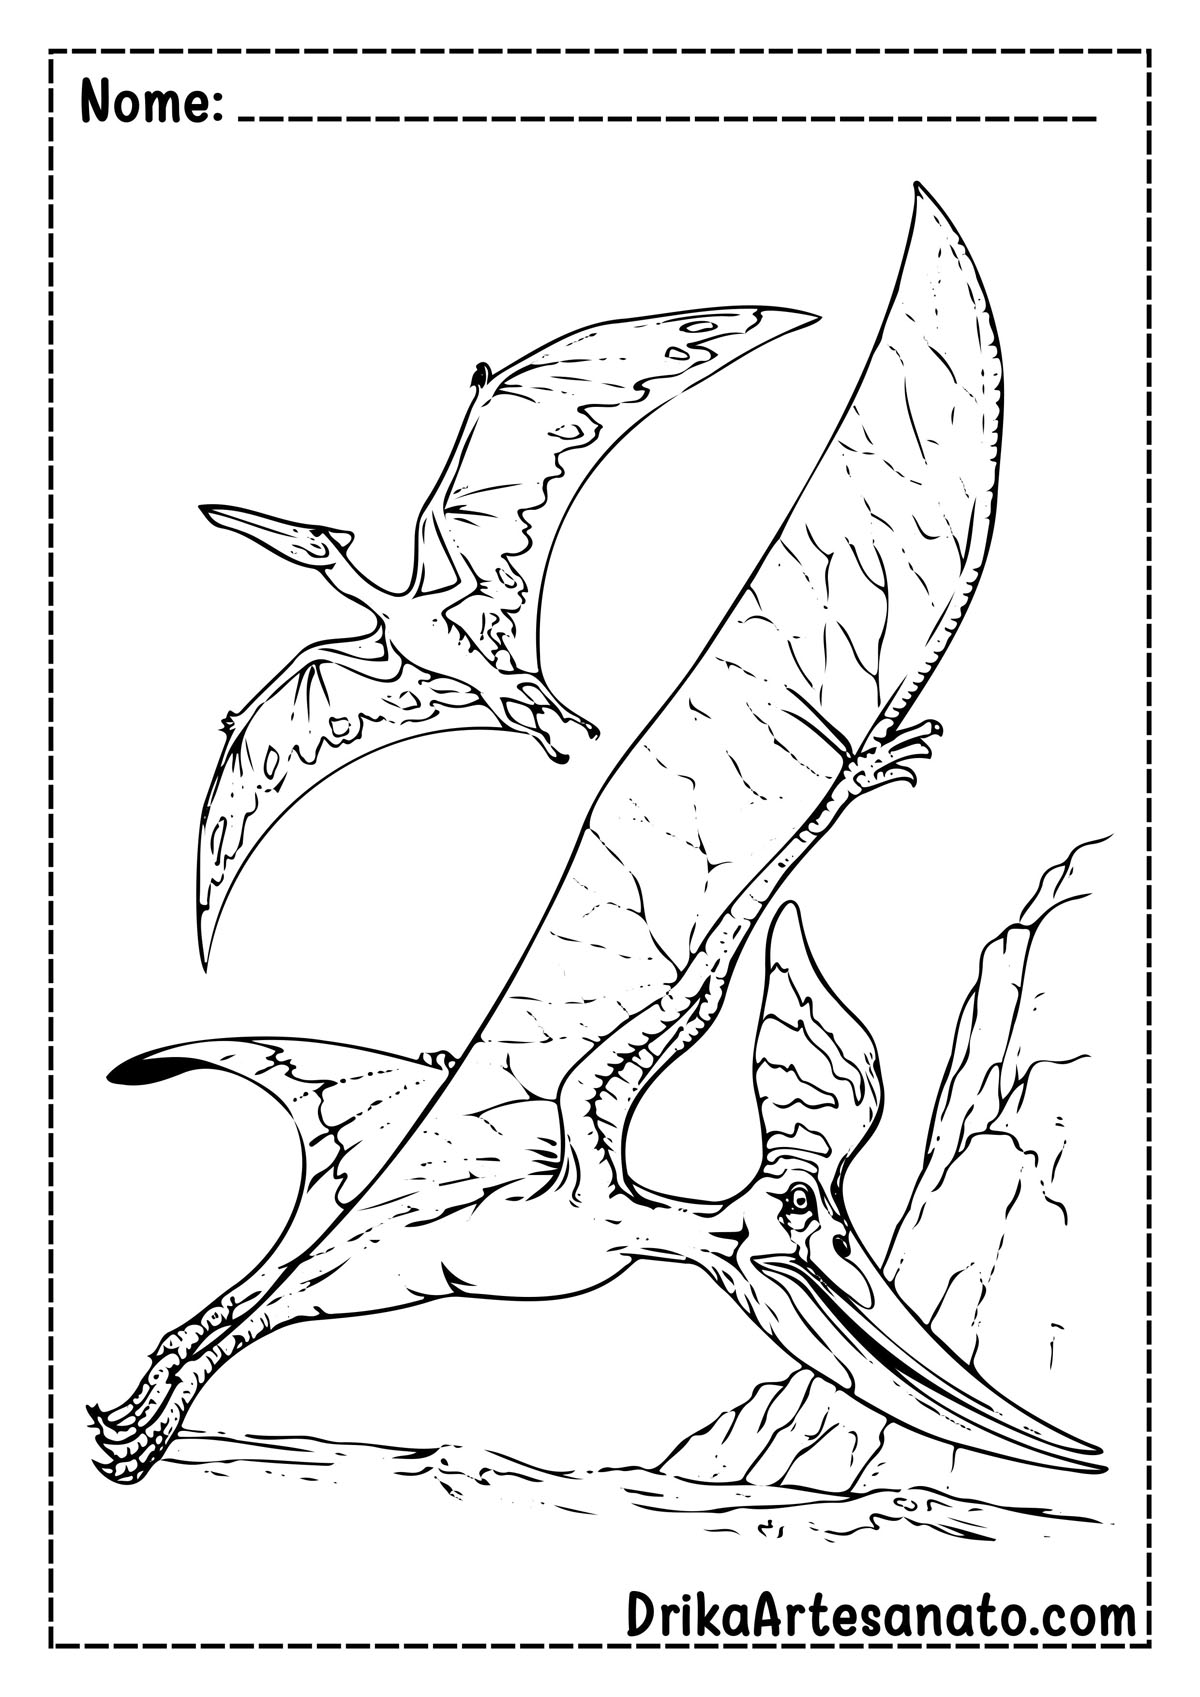 Desenho de Dinossauro para Imprimir e Pintar